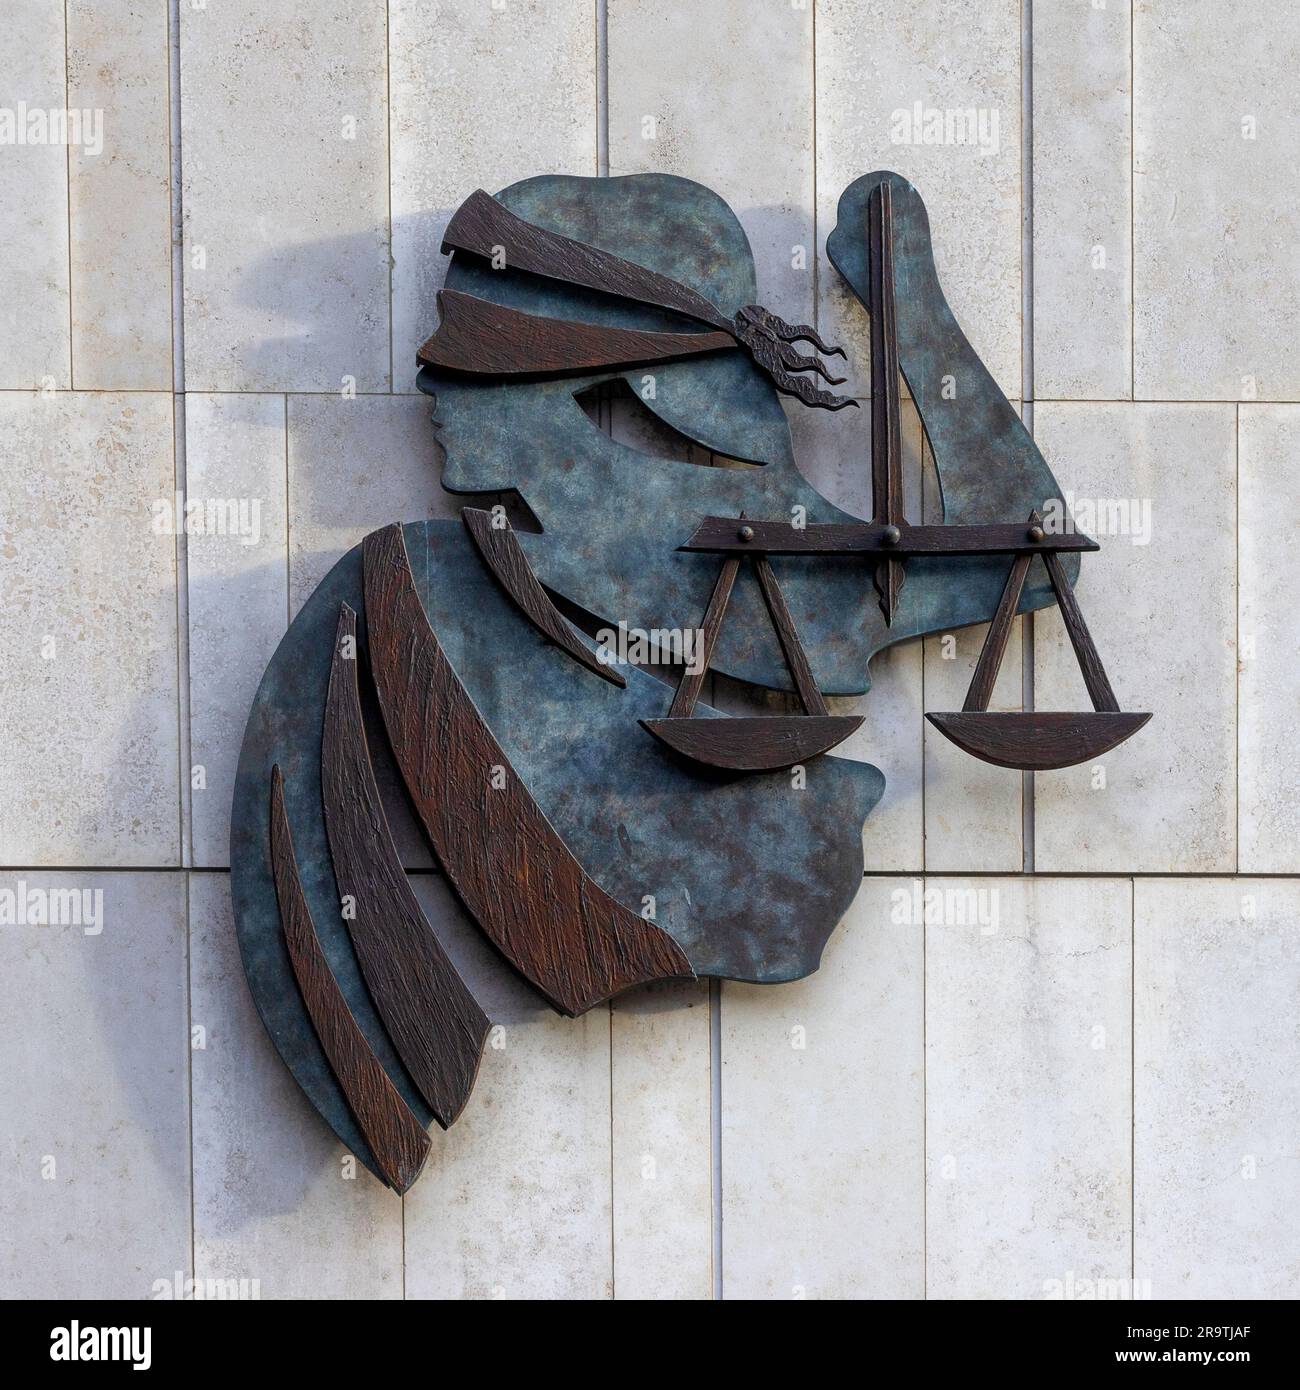 Sculpture de justice ou balance de justice, alias Lady Justice, à l'entrée des tribunaux pénaux de justice, Parkgate Street/Phoenix Park, Dublin City, Irlande Banque D'Images